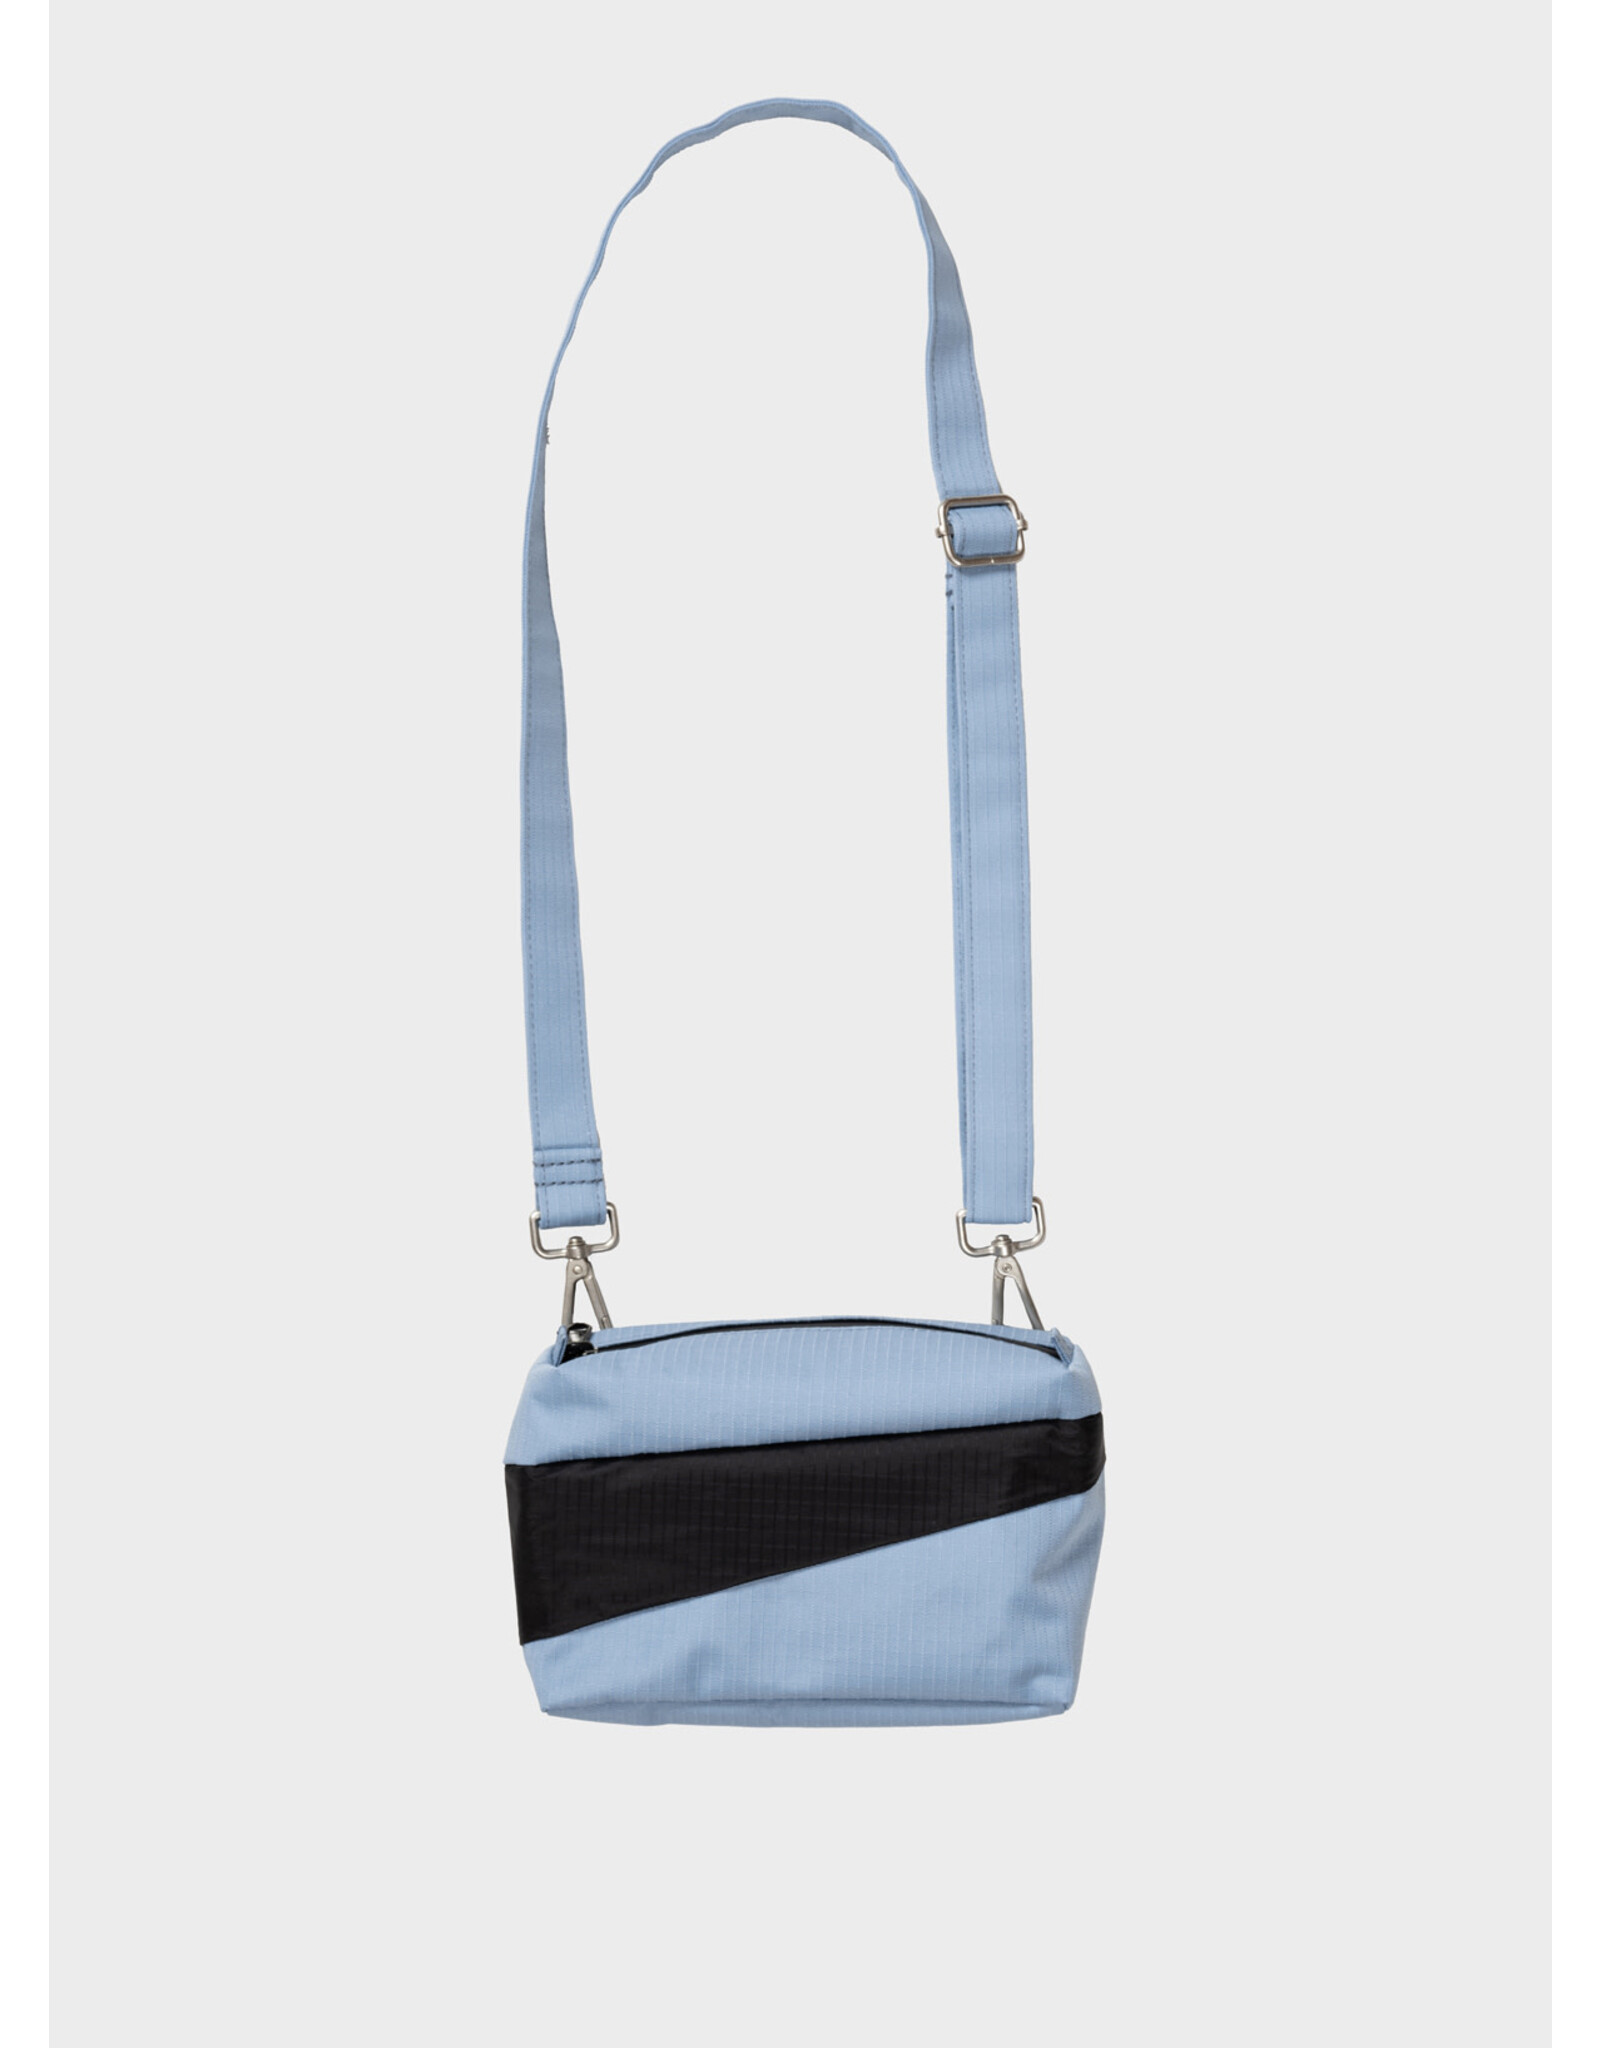 Susan Bijl Bum Bag S, Fuzz & Black  - 13 x 18,5 x 6,5 cm